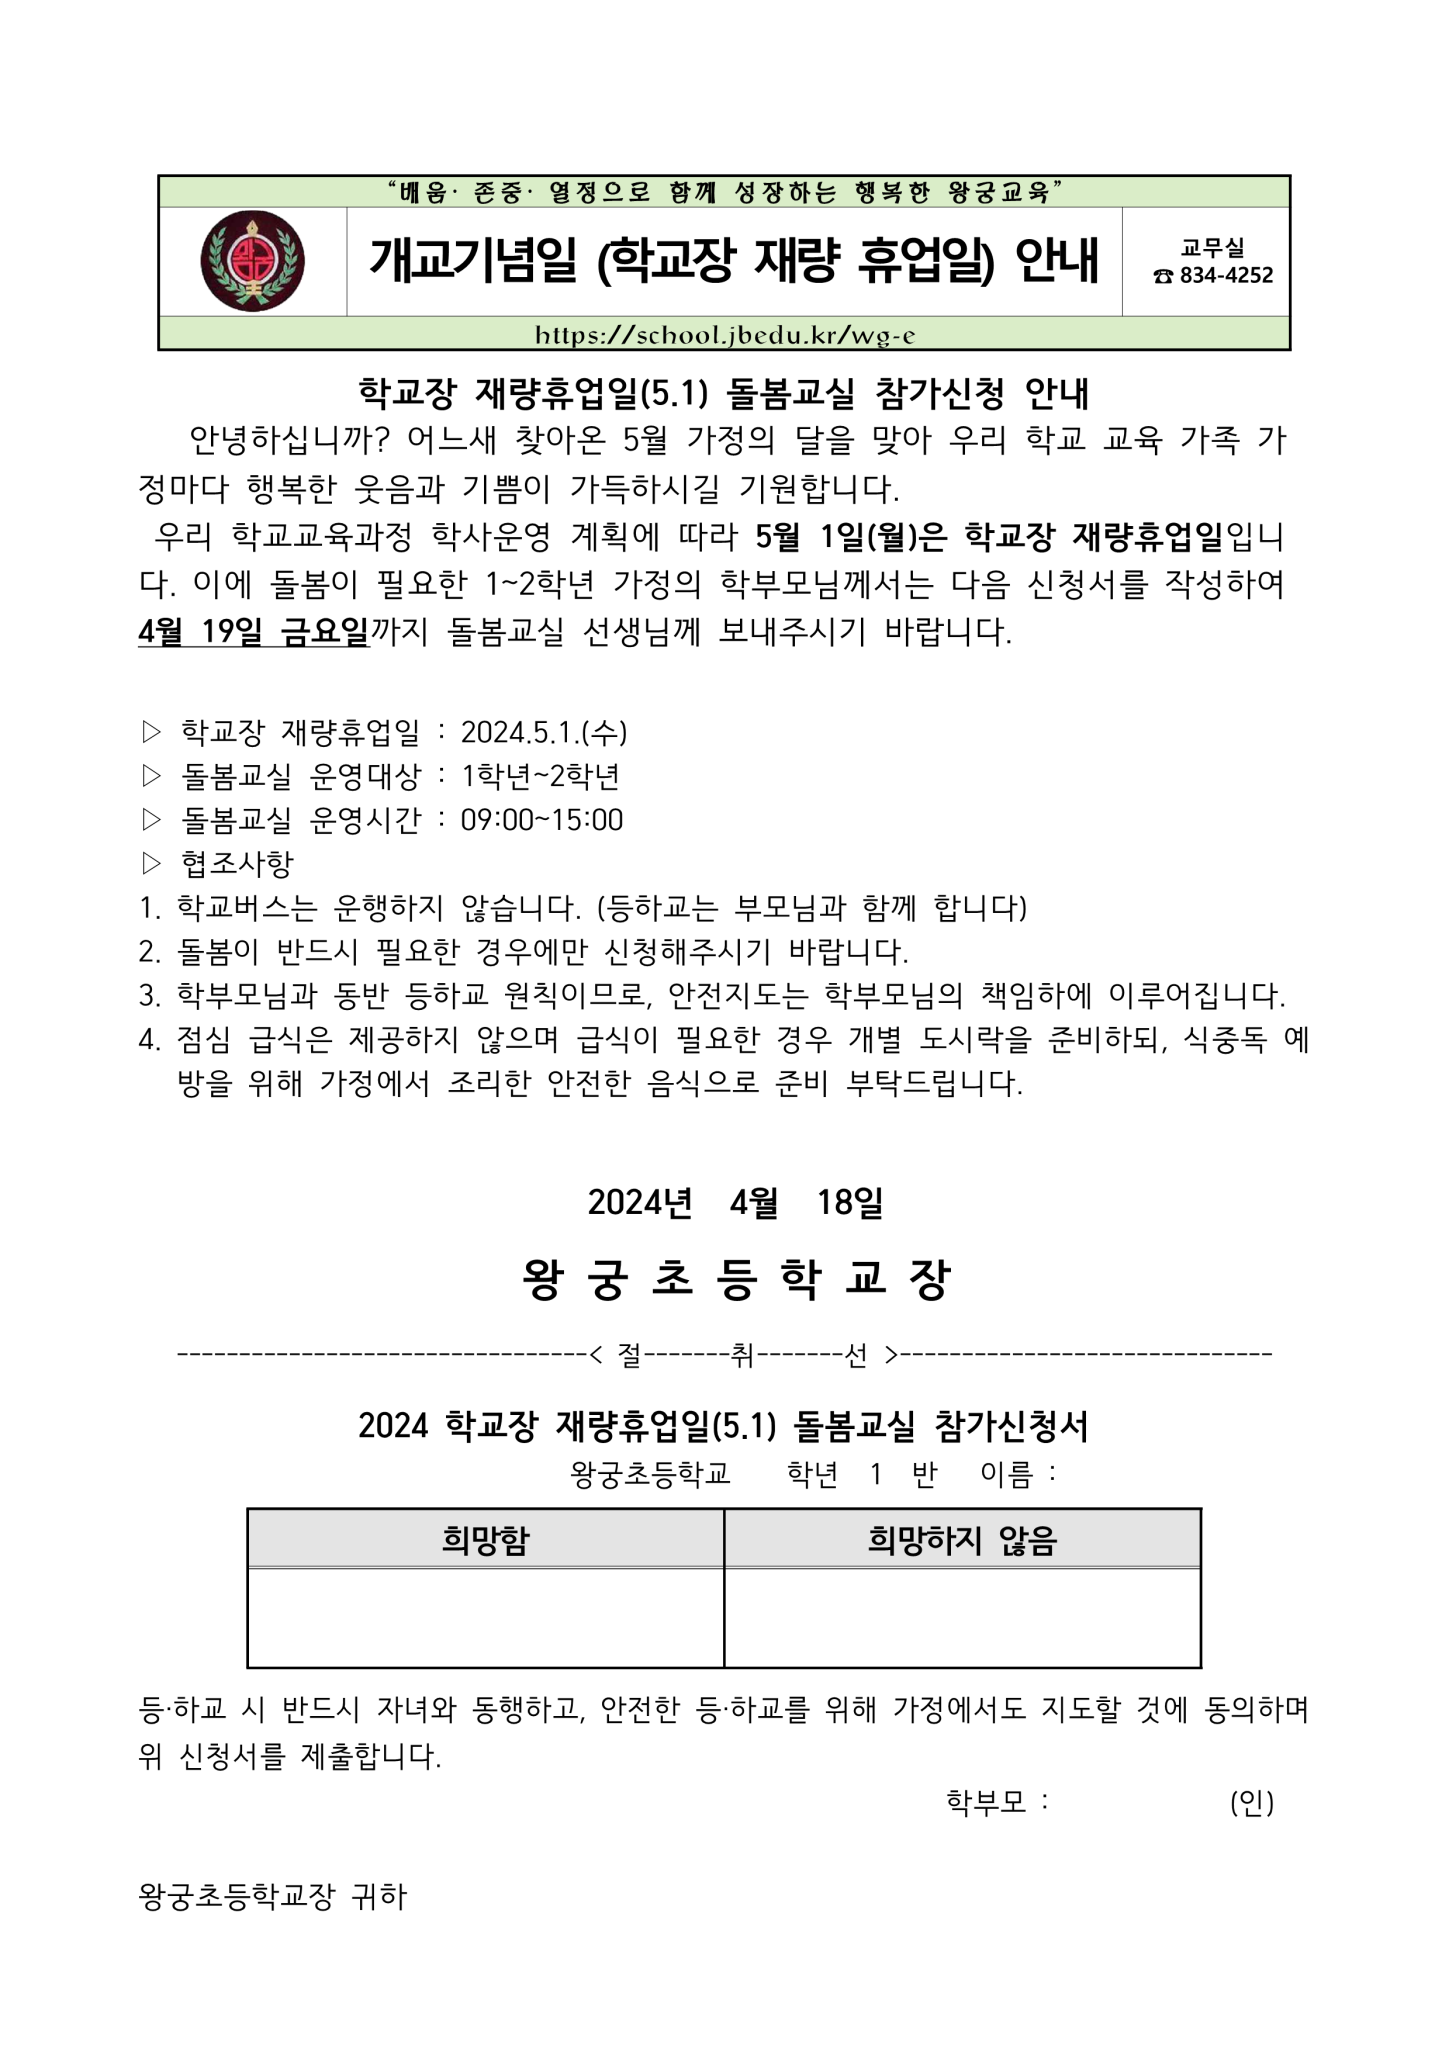 2024학년도 학교장 재량휴업일 돌봄교실 참가신청_1